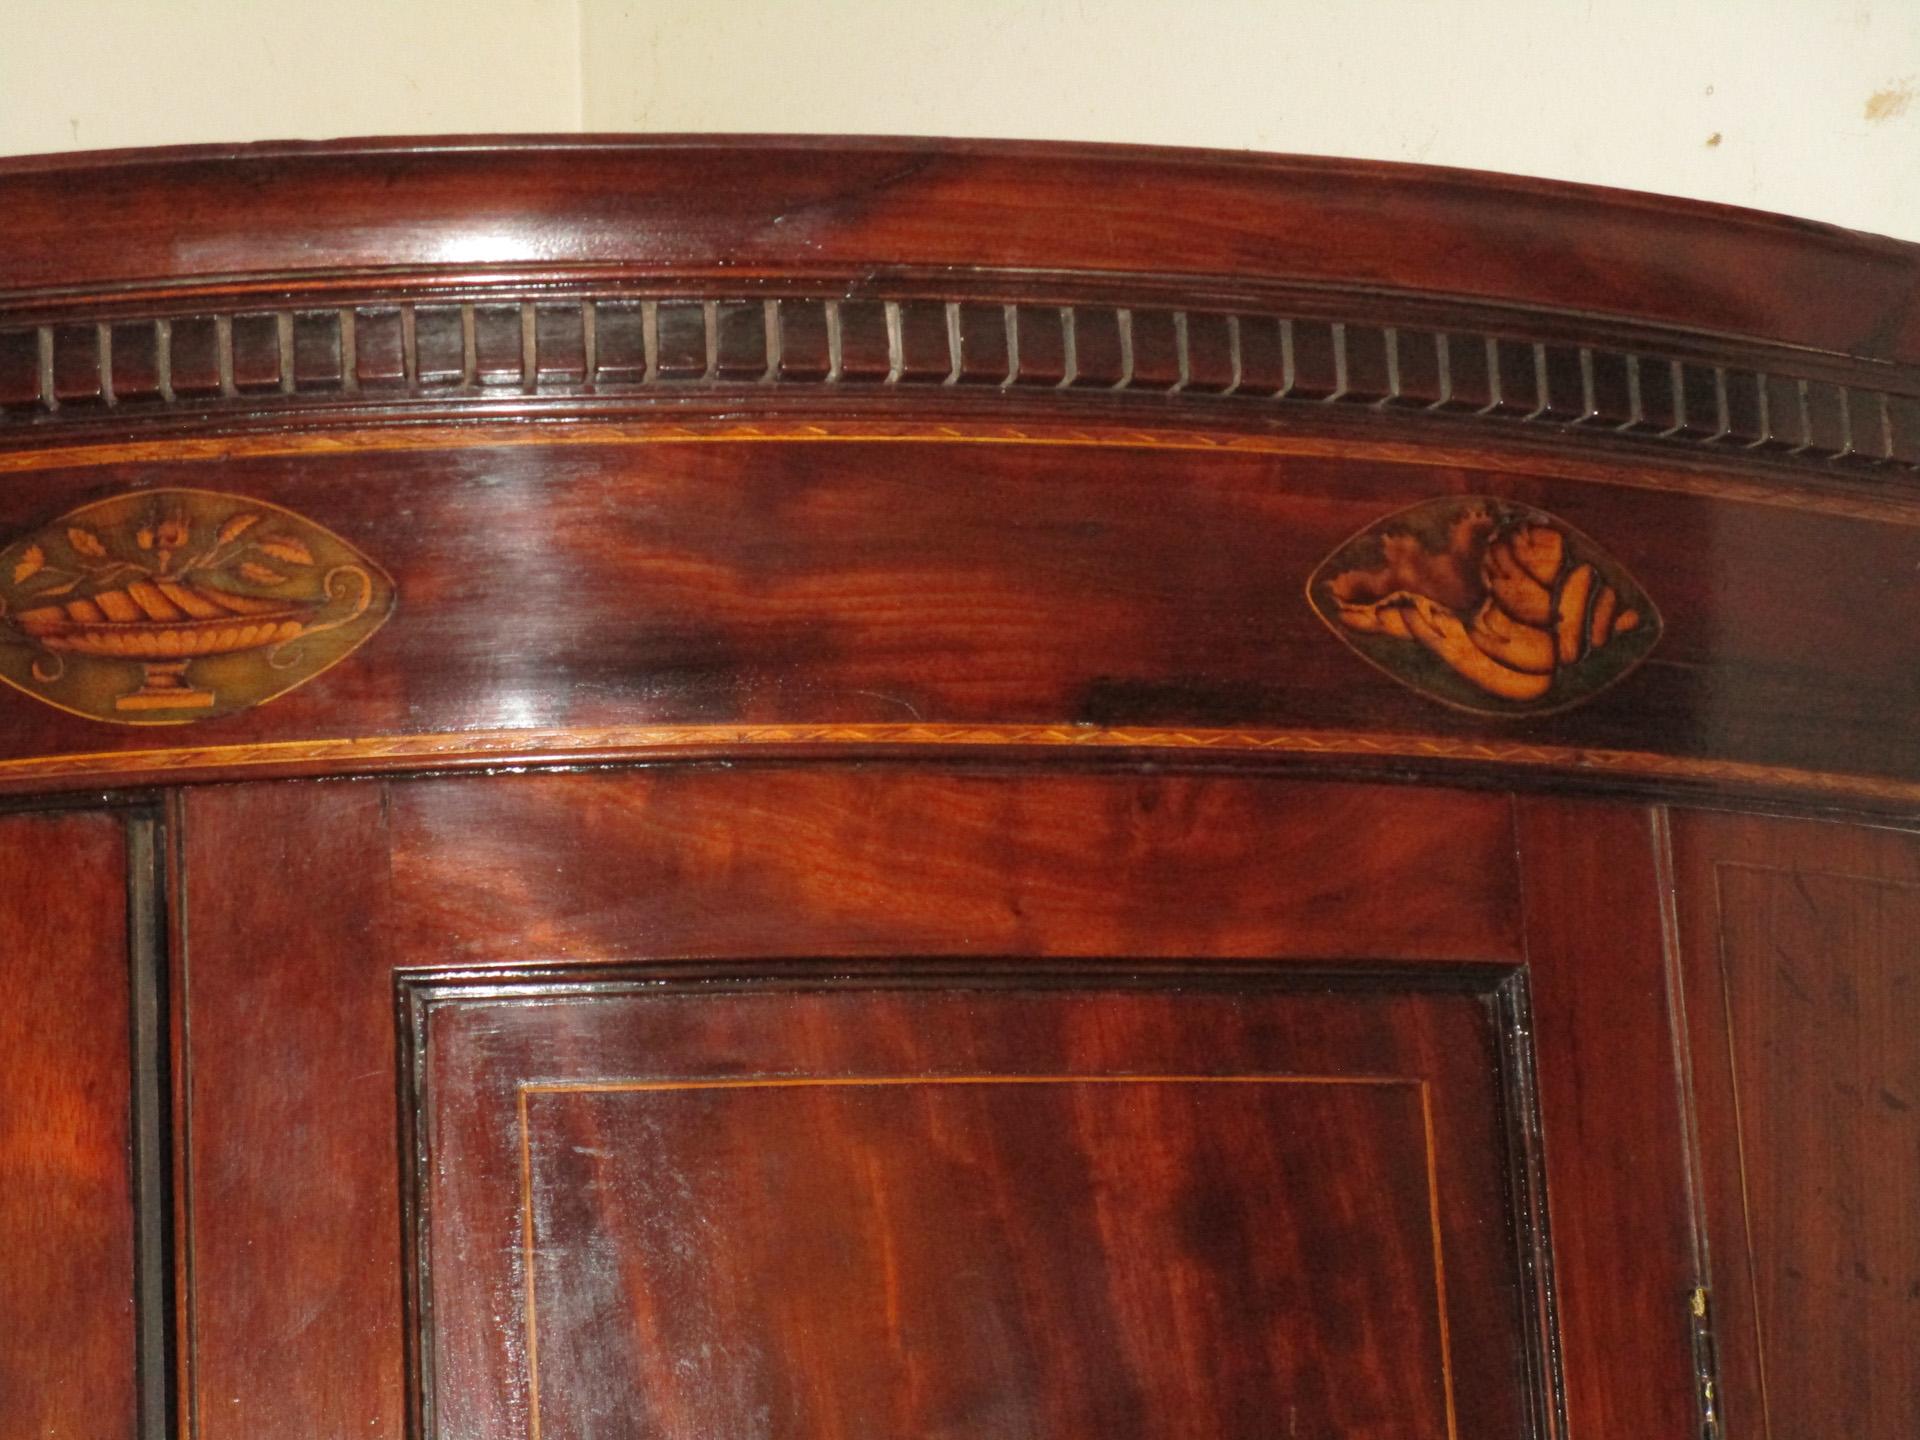 Englischer Mahagoni-Hängeschrank mit Bogenfront aus dem späten 18. Jahrhundert, mit String-Intarsien in den Türen mit Knochenschildern, drei geschwungenen Innenschubladen mit Messinggriffen und vier Innenböden. Die komplizierte Fruchtholzintarsie am